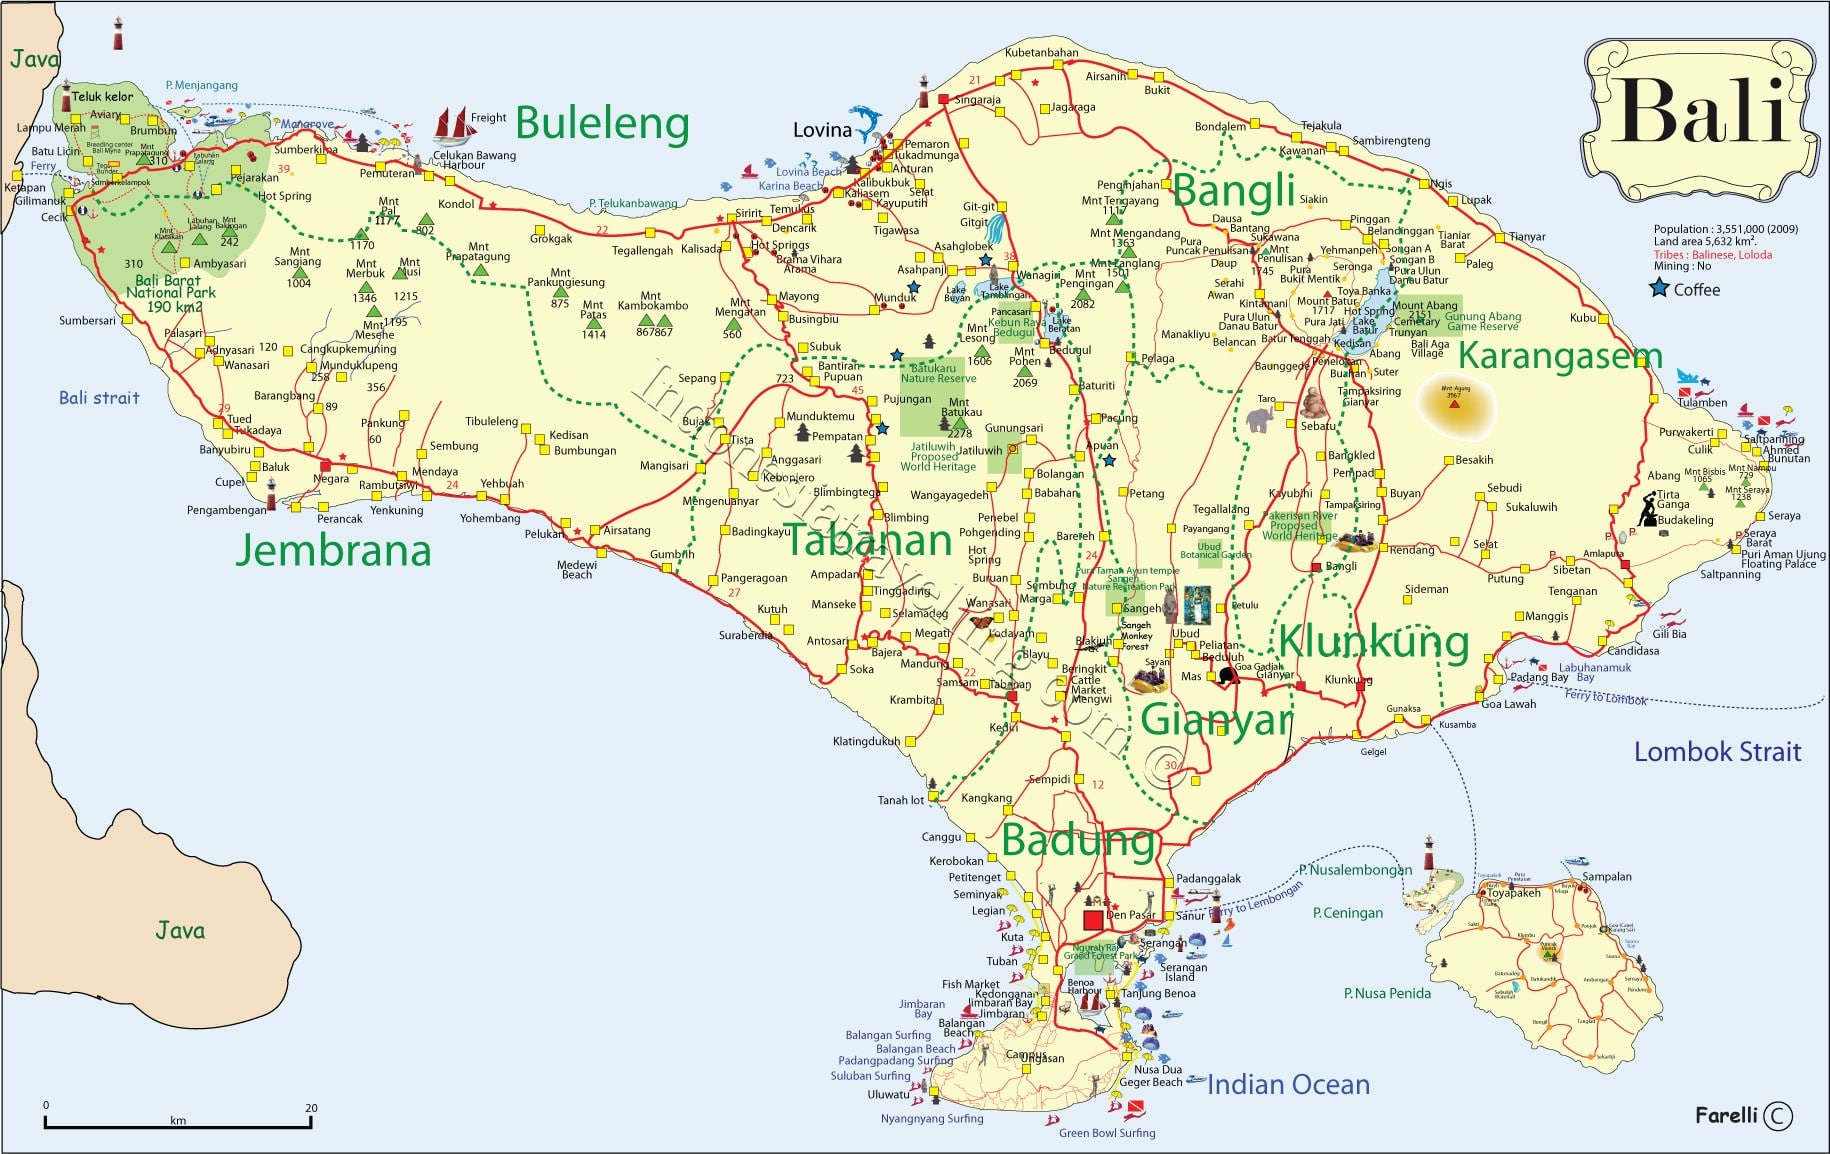 bali tourism map pdf